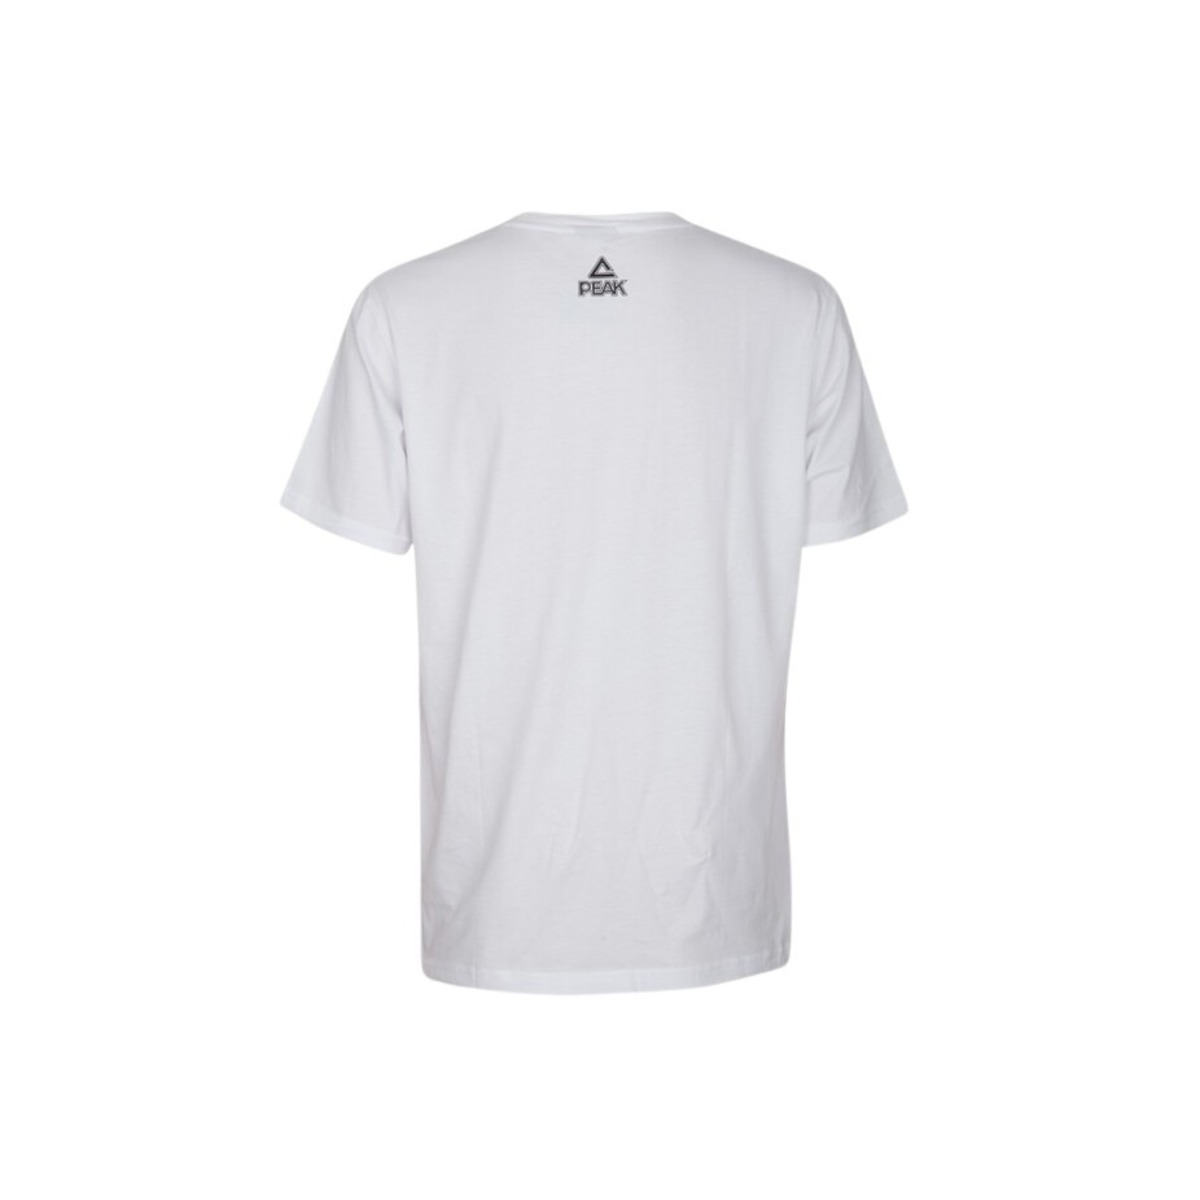 Camiseta Peak Classic - Blanco  MKP